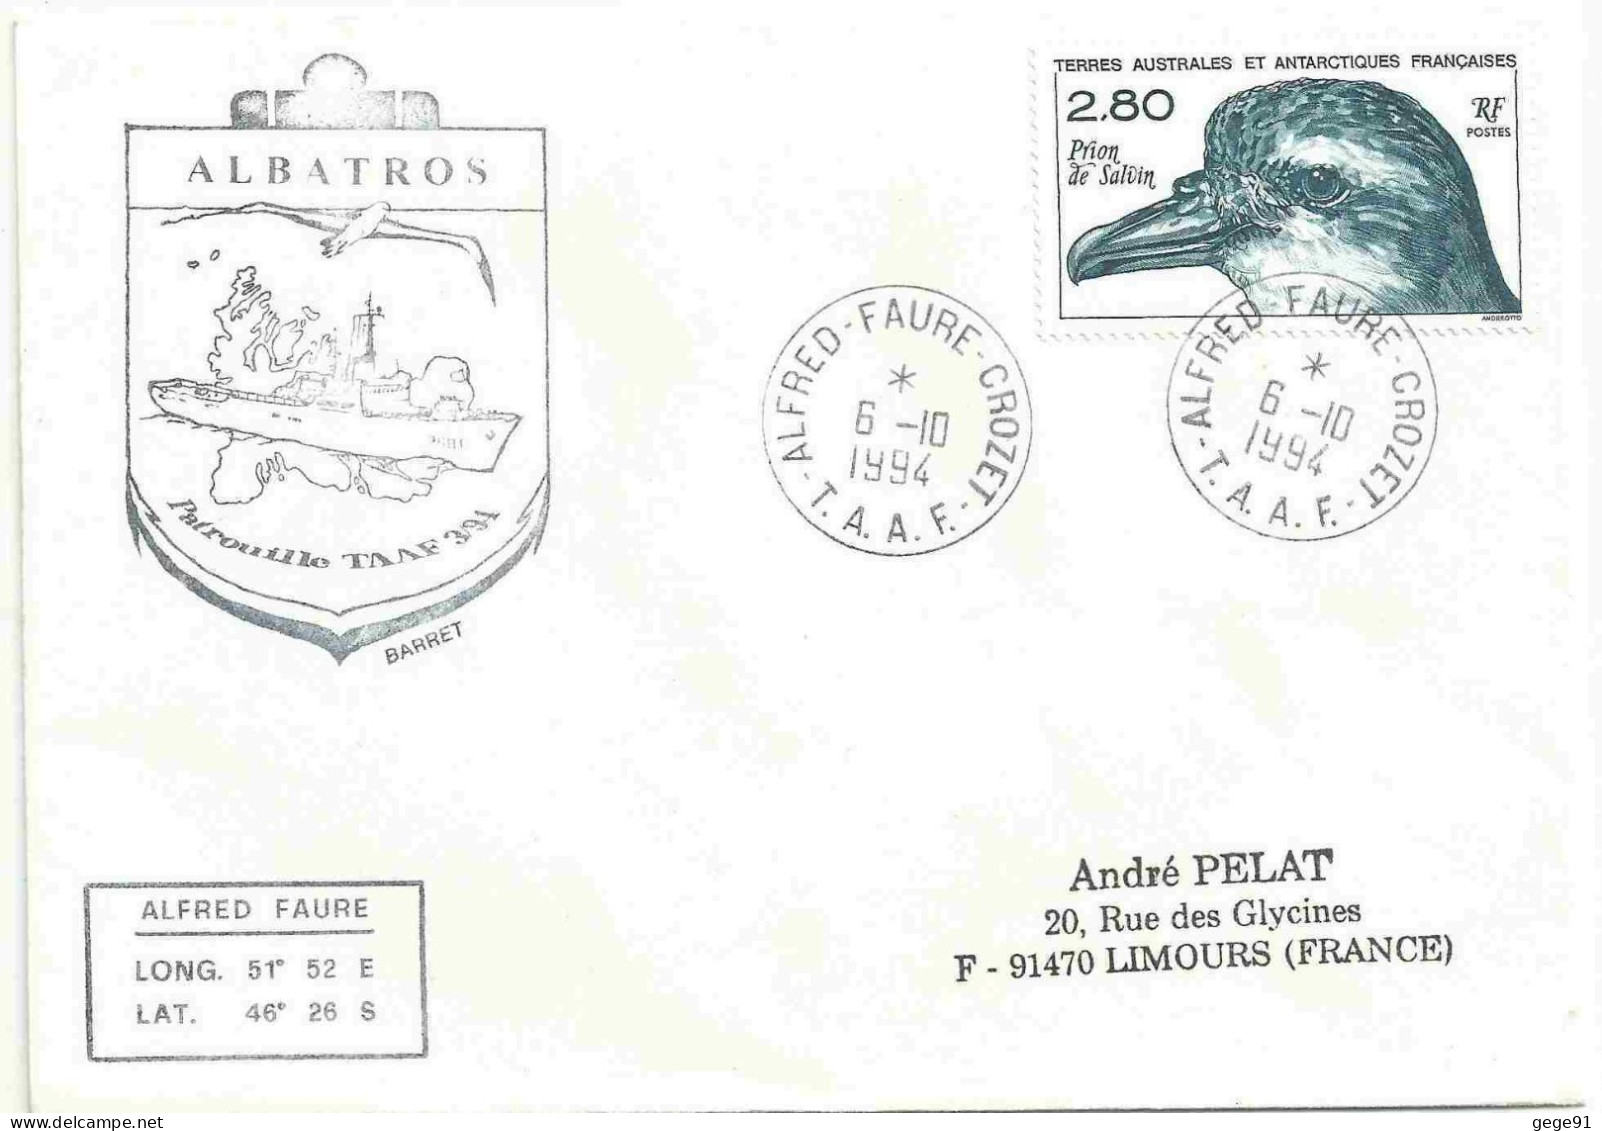 YT 189 Prion De Salvin - Posté à Bord De L'Albatros - Alfred Faure - Crozet - 06/10/1994 - Covers & Documents